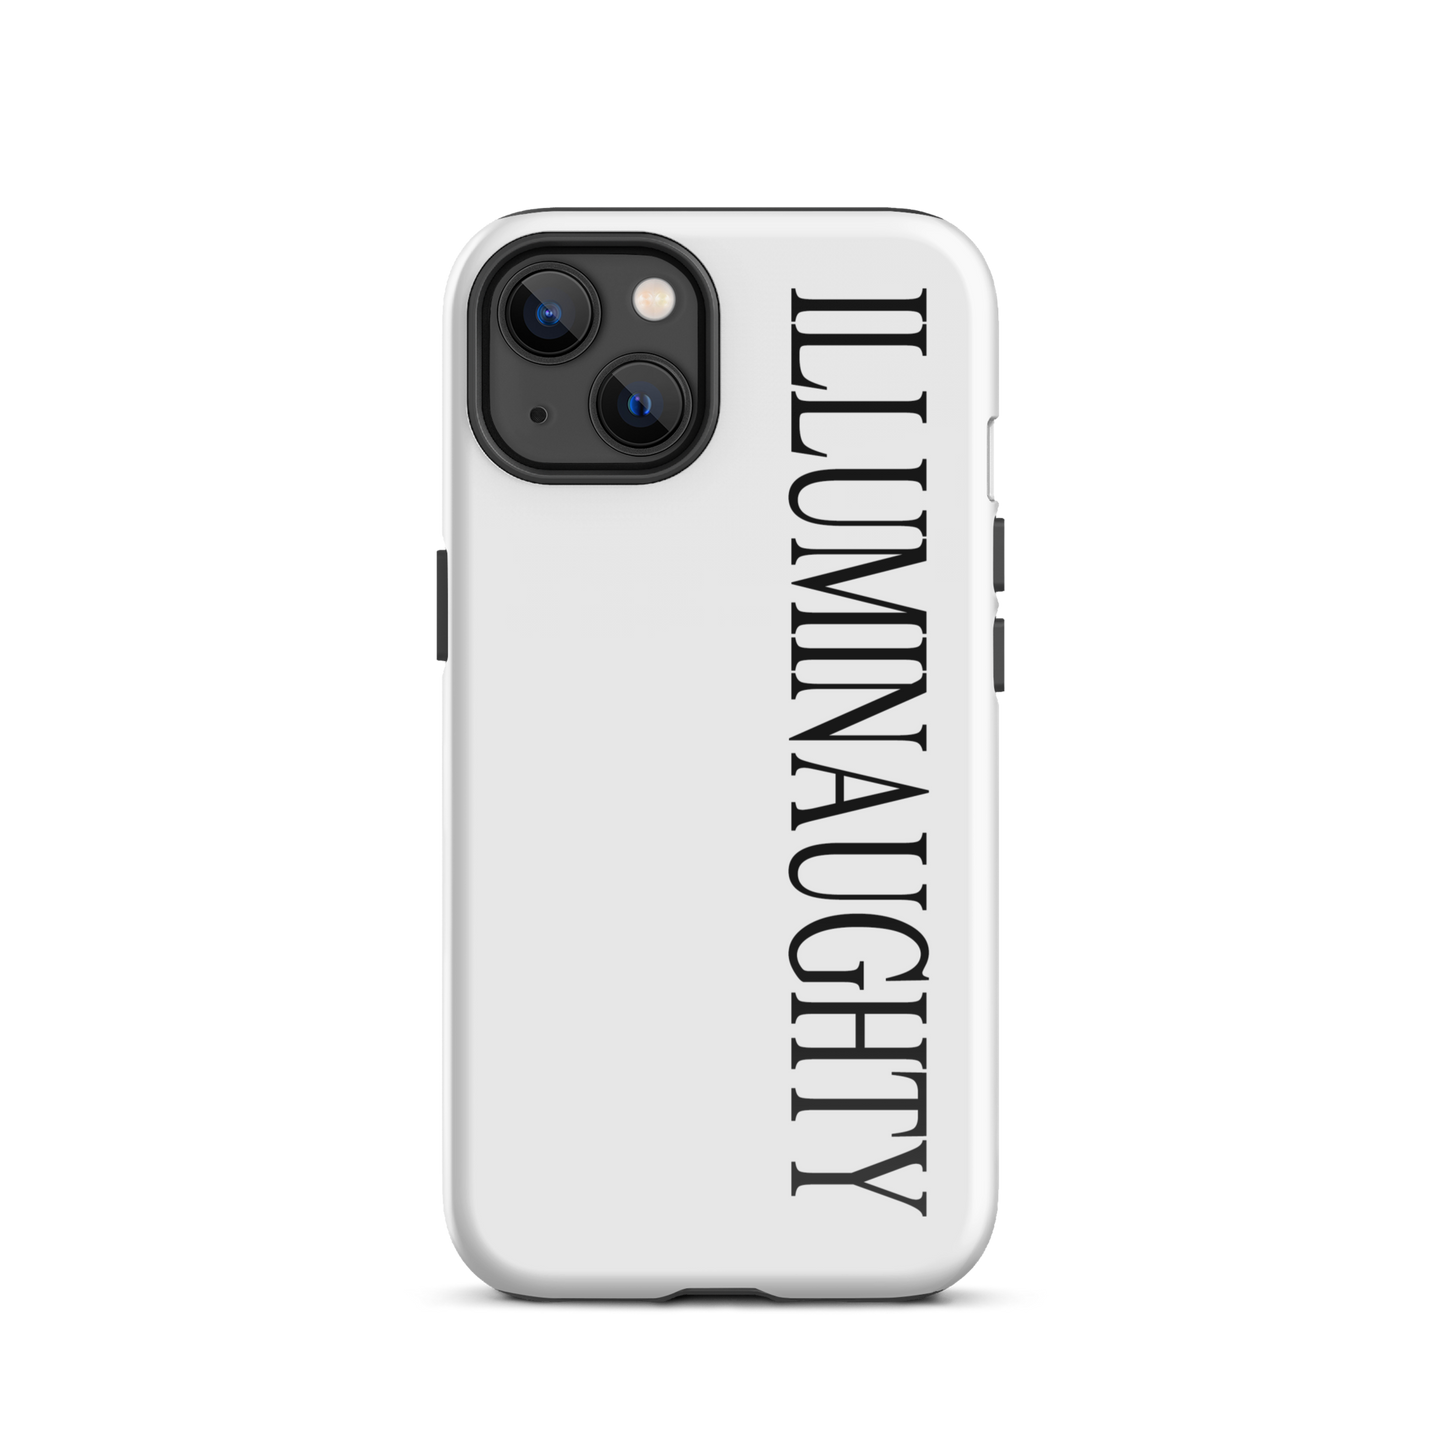 ILLUMINAUGHTY IPHONE CASE